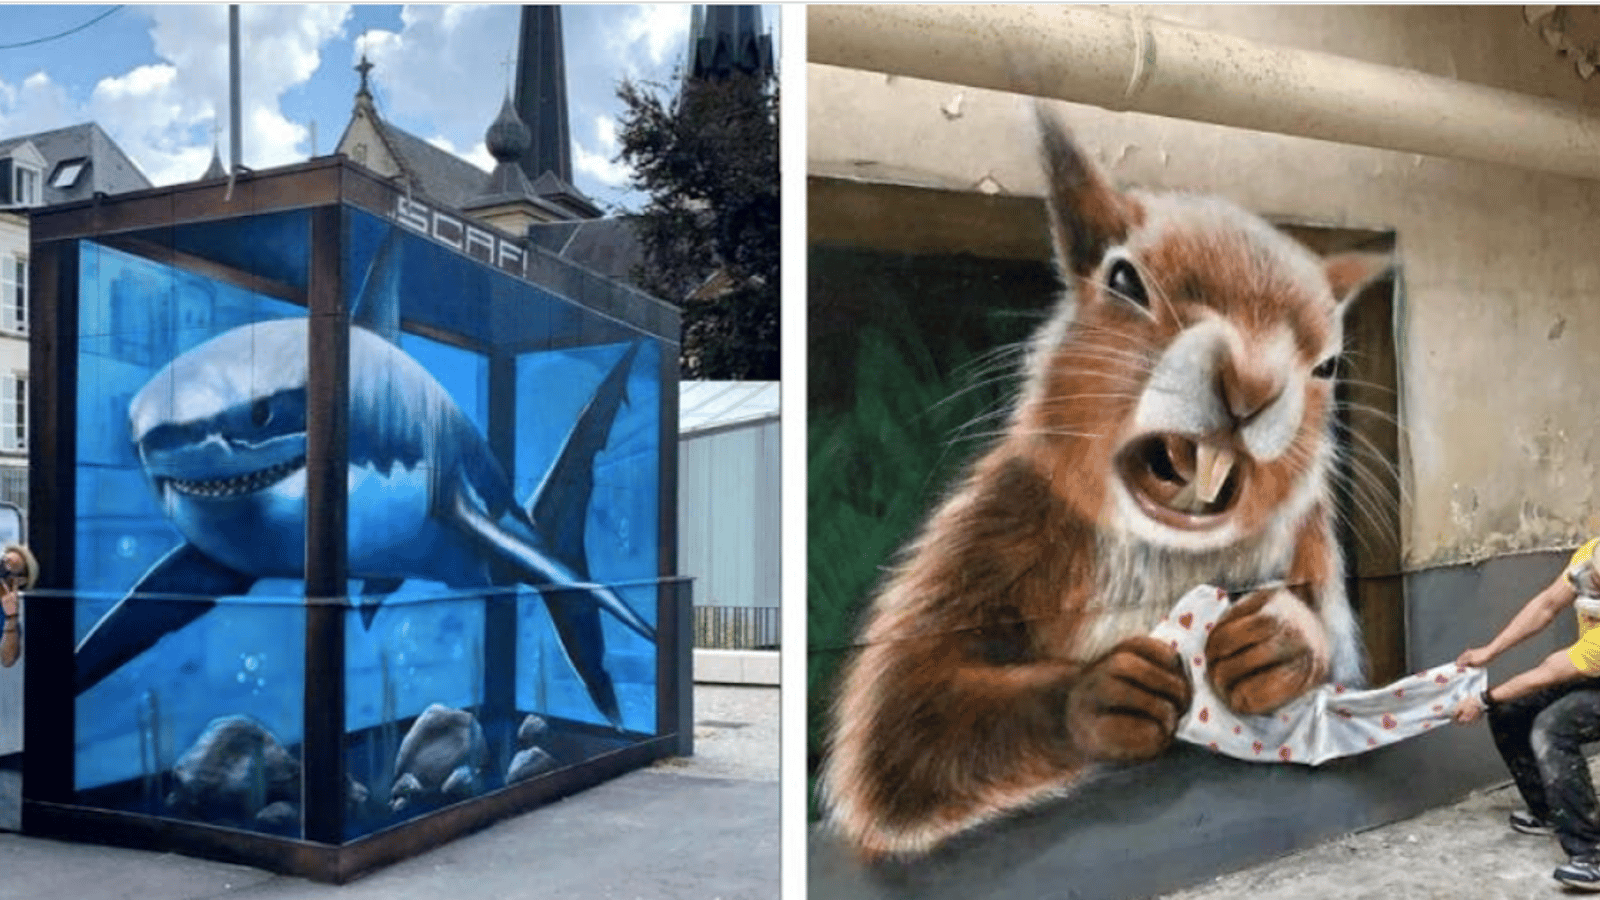 10 oeuvres urbaines hallucinantes qui donnent l’impression que des créatures vont bondir hors des murs